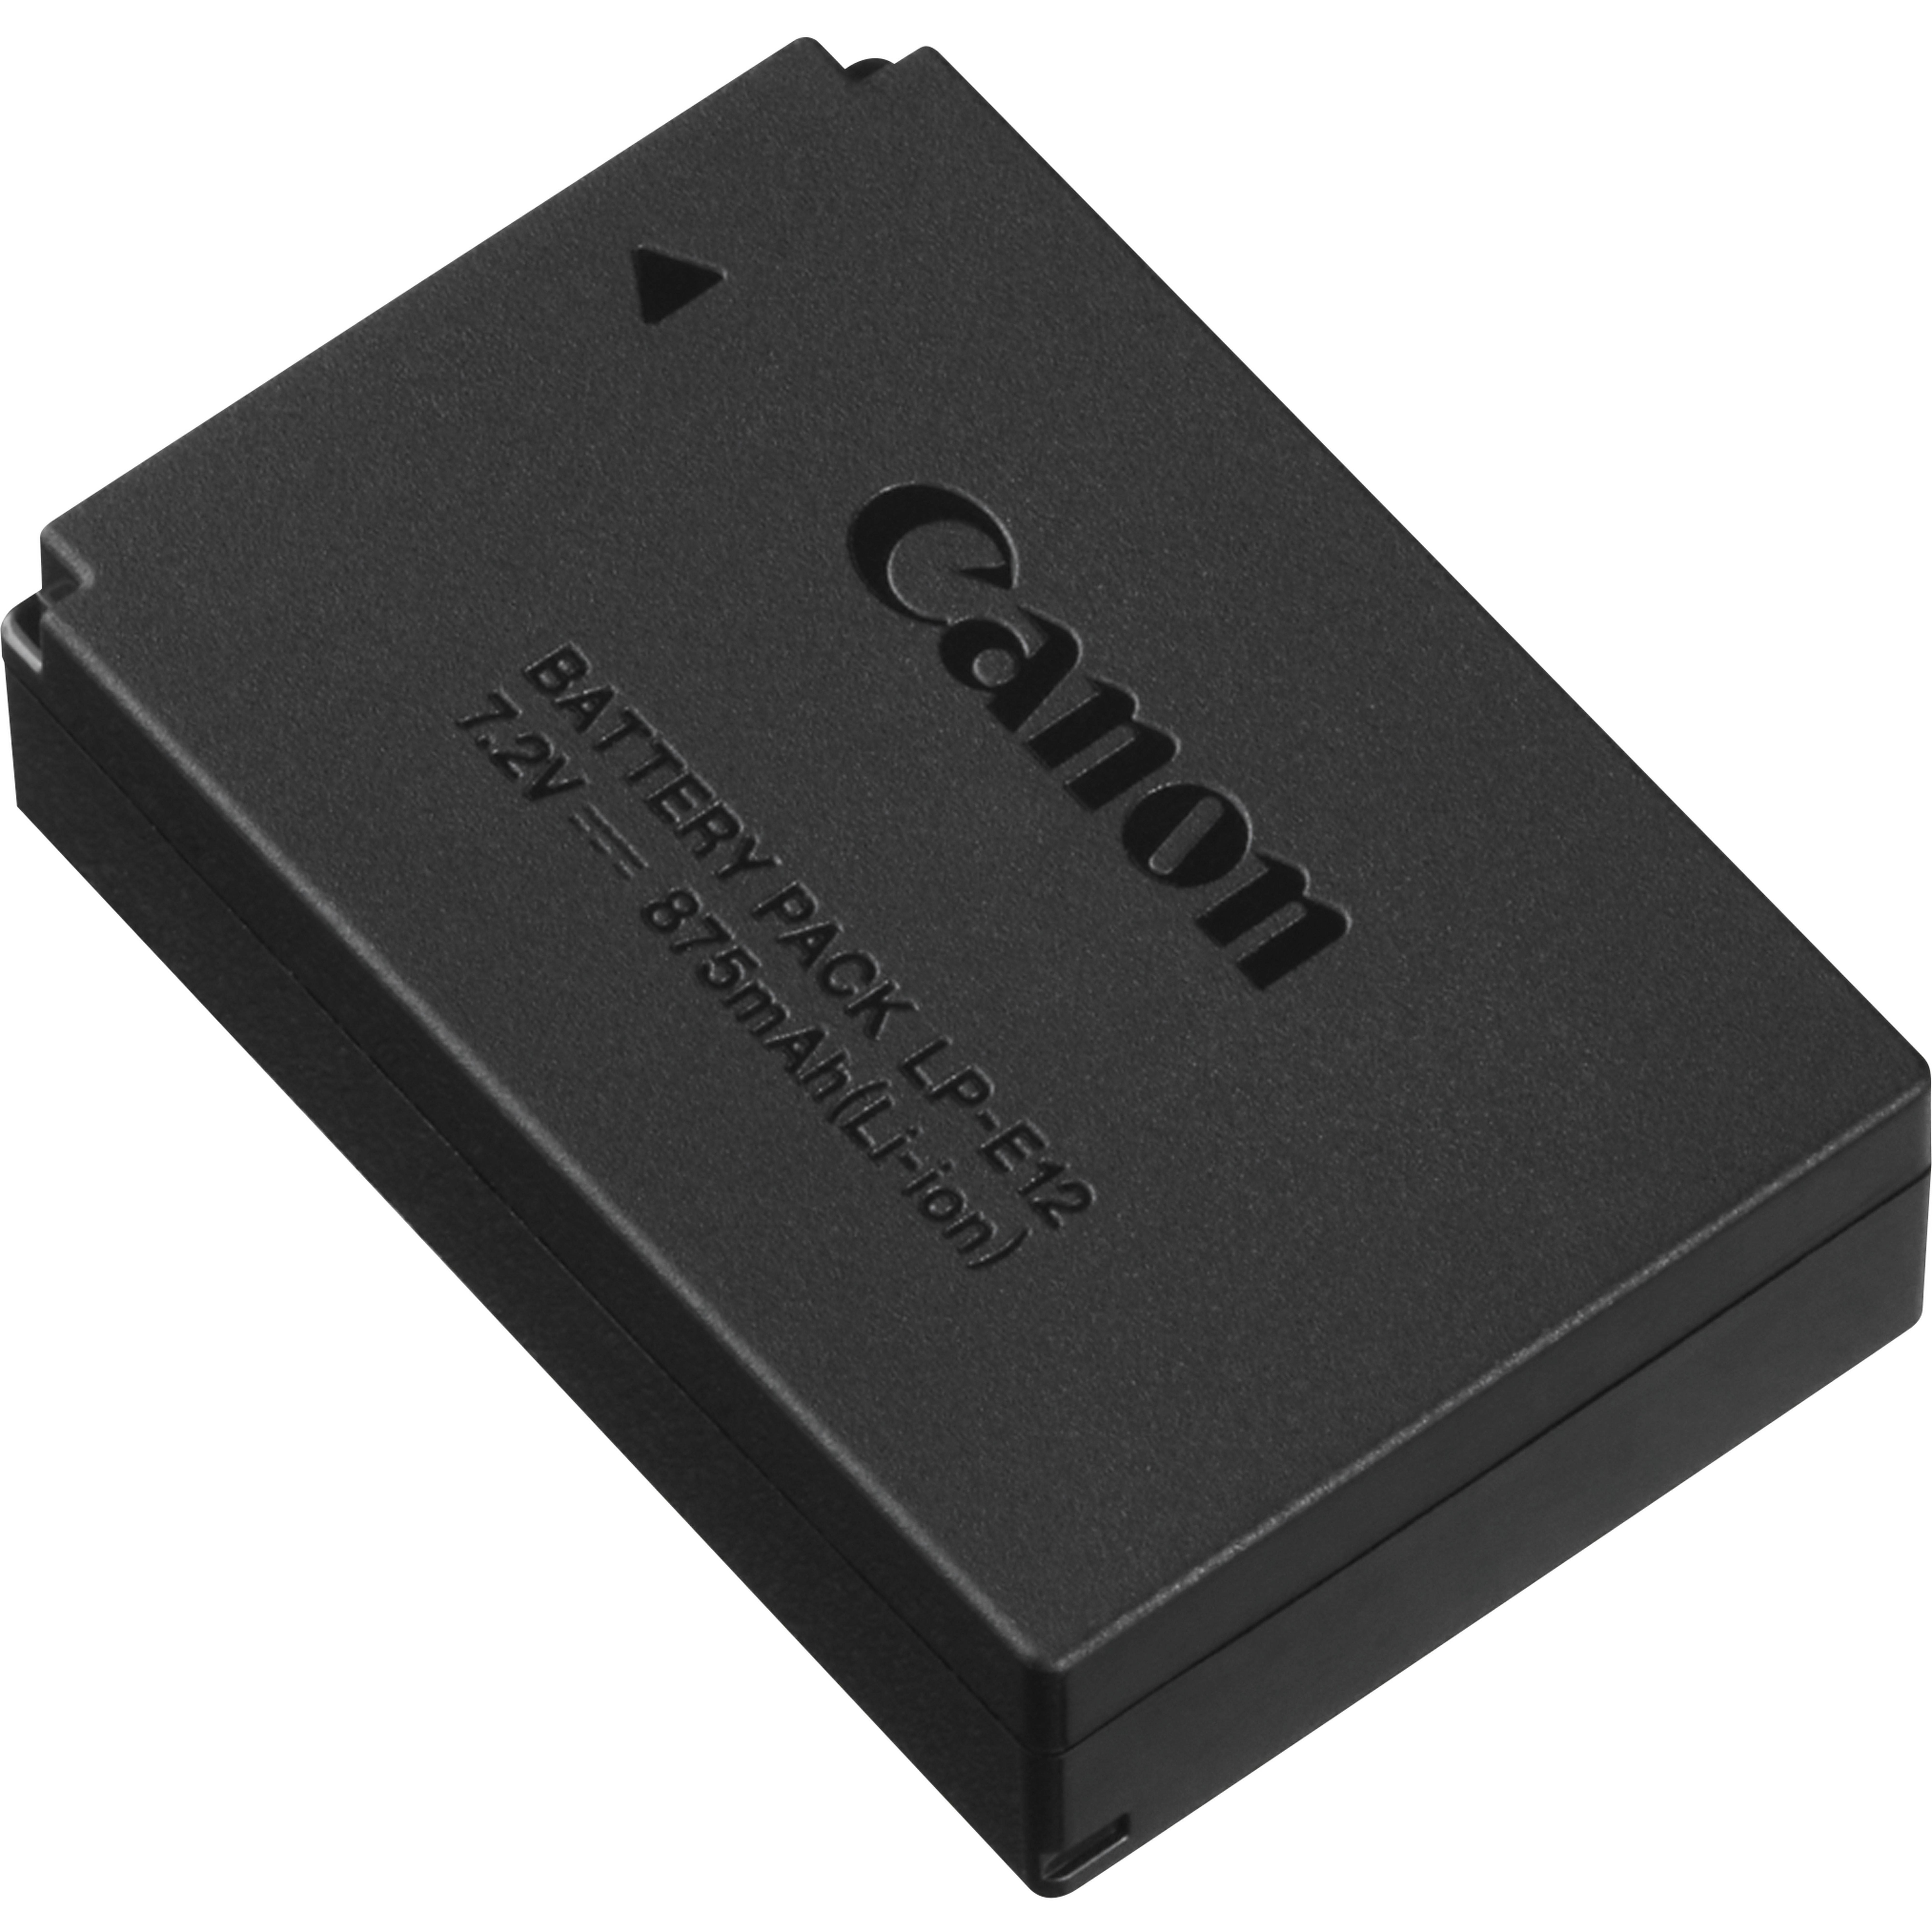 Rca Informatique - Image du produit : LP-E12 BATTERY PACK FOR THE CANON EOS-M